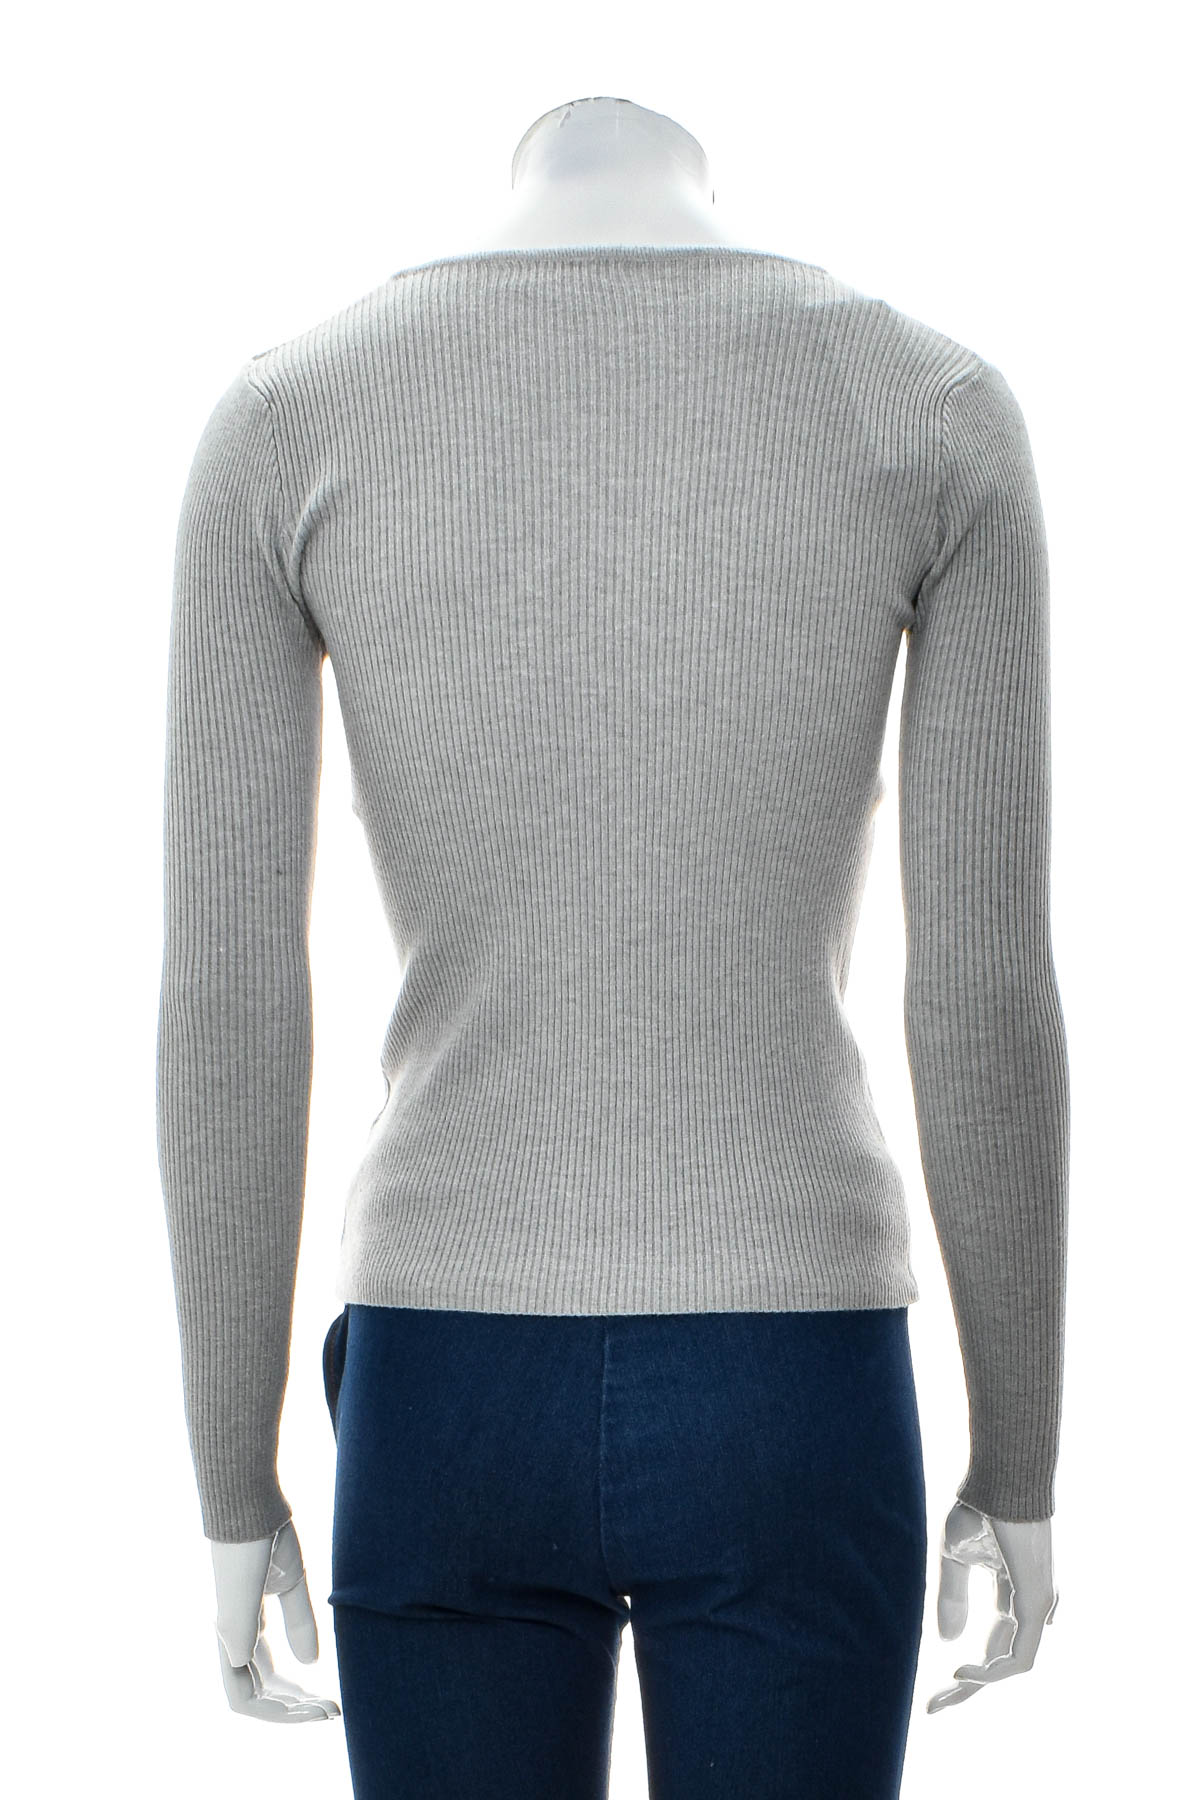 Women's sweater - Bluoltre - 1